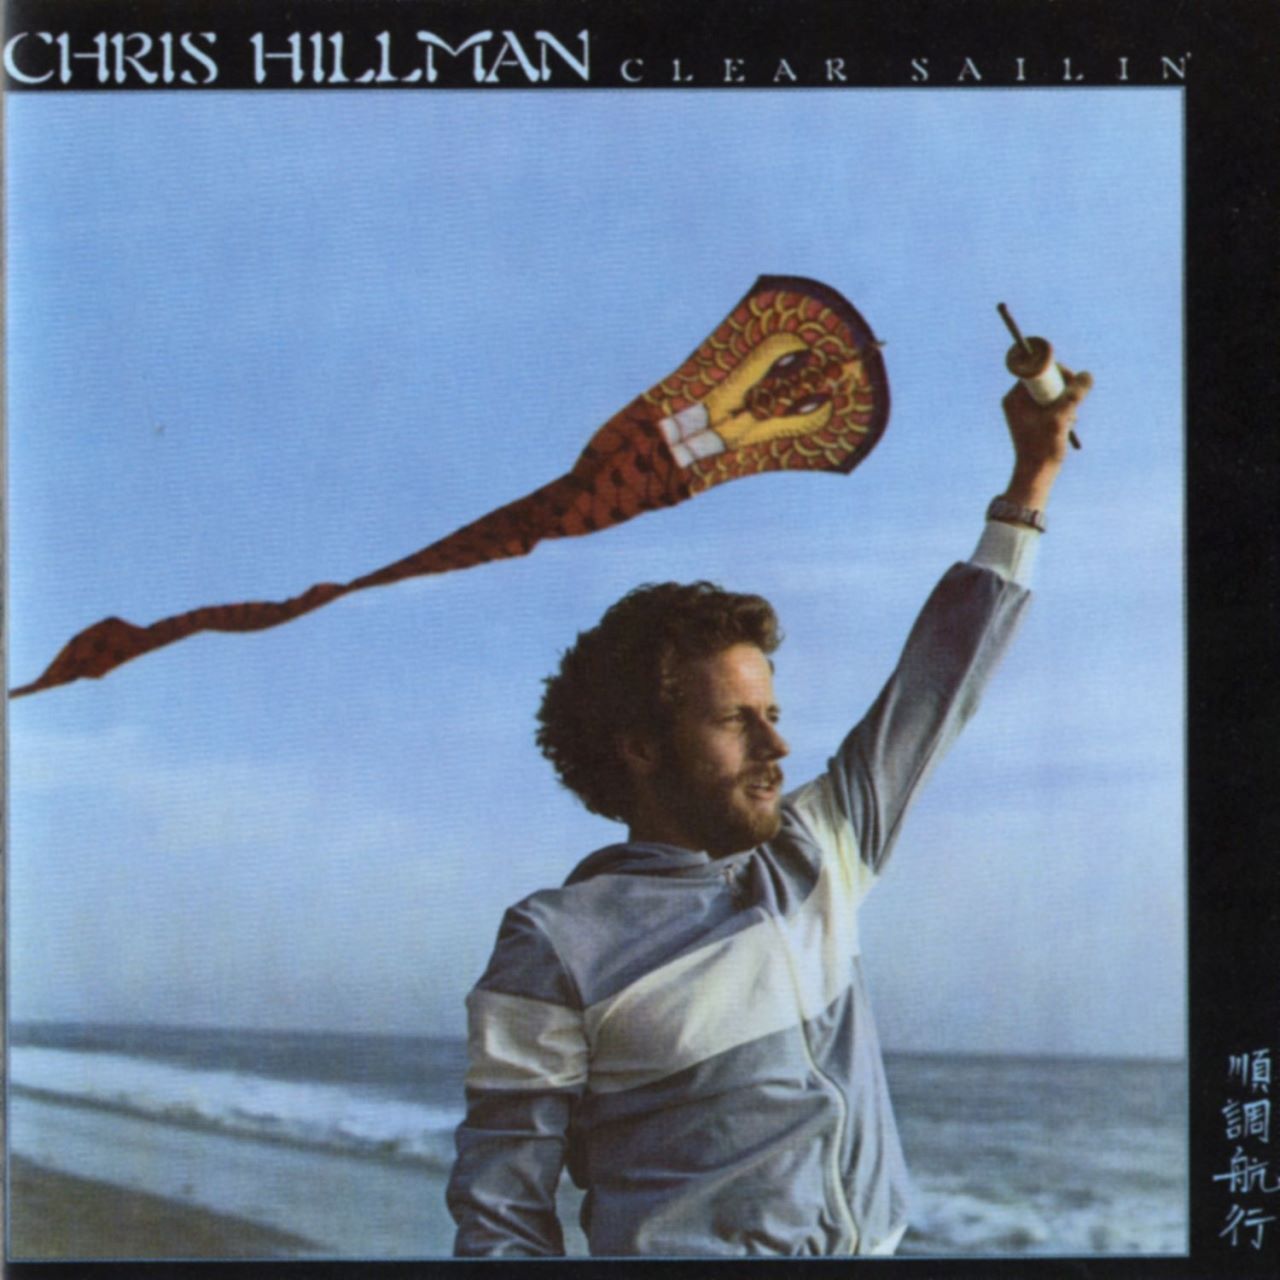 Chris Hillman - Clear Sailin' cover album